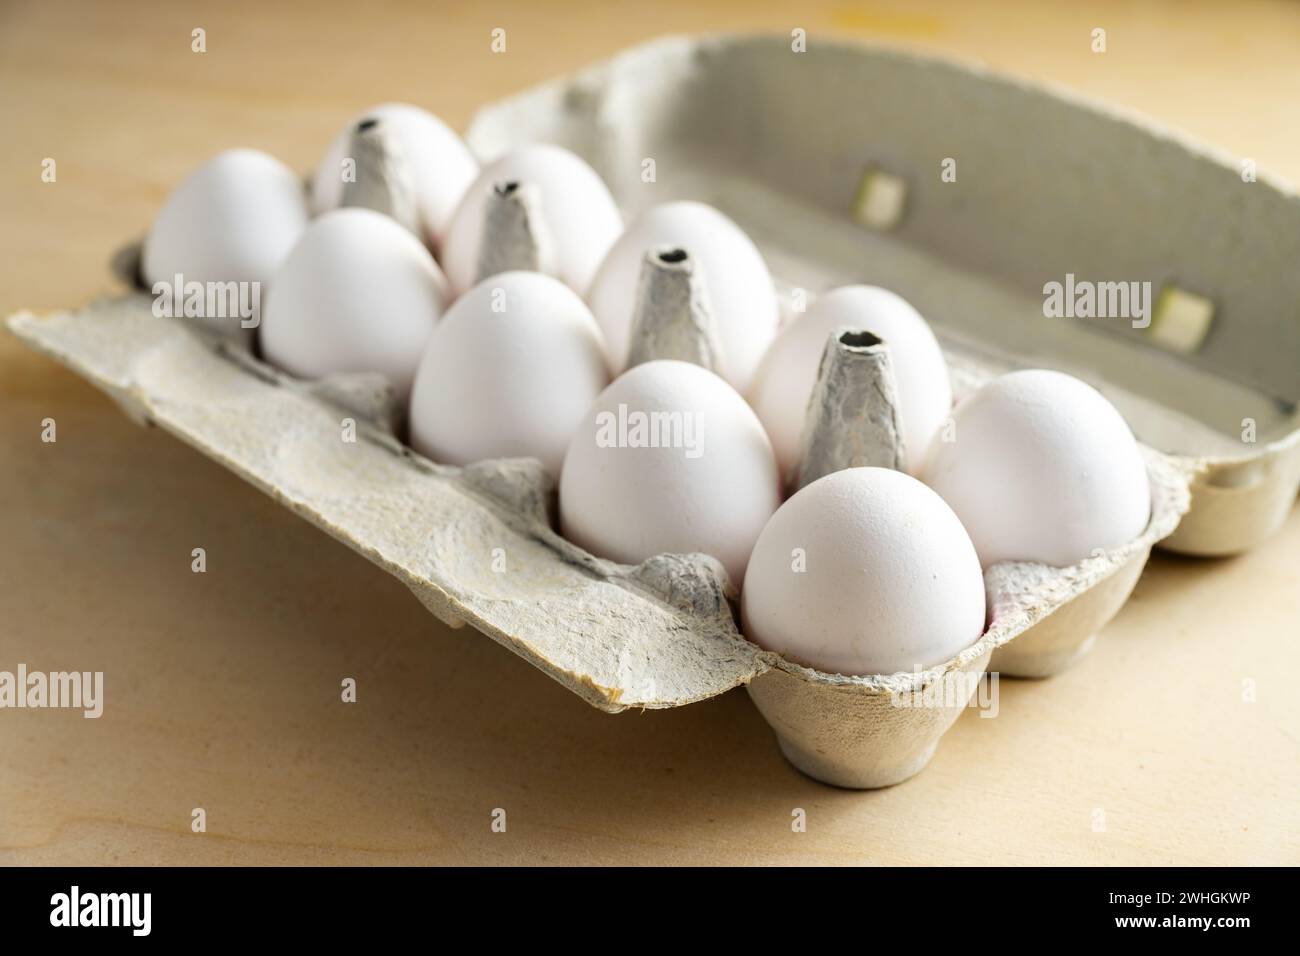 Zehn frische weiße Eier in einem Karton auf einem Holztisch, Essen und Osterkonzept, ausgewählter Fokus Stockfoto